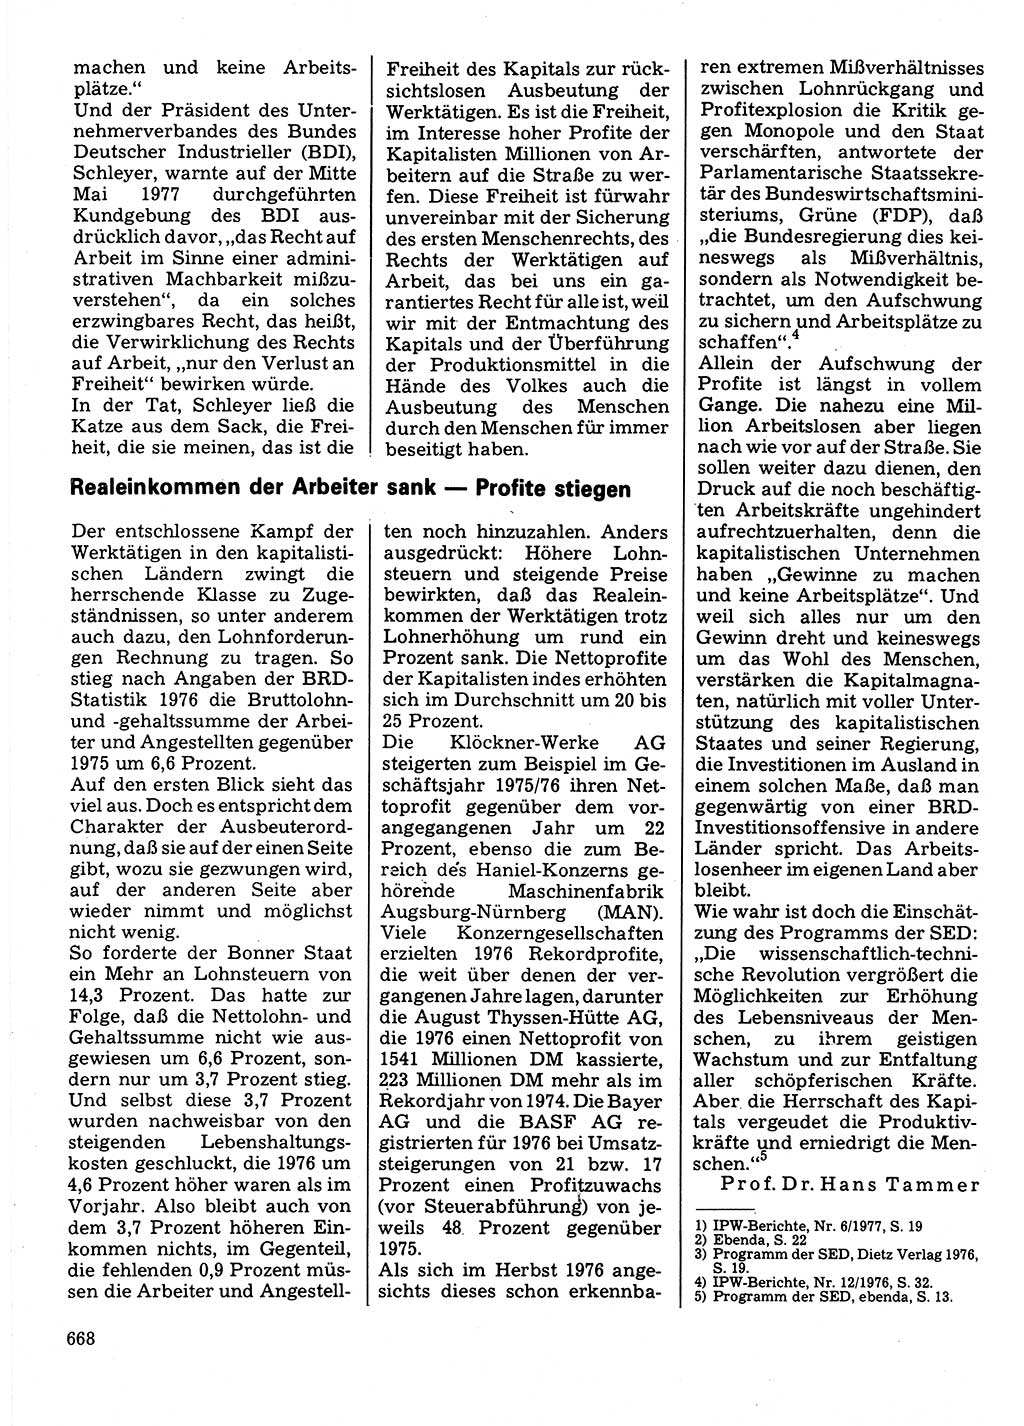 Neuer Weg (NW), Organ des Zentralkomitees (ZK) der SED (Sozialistische Einheitspartei Deutschlands) für Fragen des Parteilebens, 32. Jahrgang [Deutsche Demokratische Republik (DDR)] 1977, Seite 668 (NW ZK SED DDR 1977, S. 668)